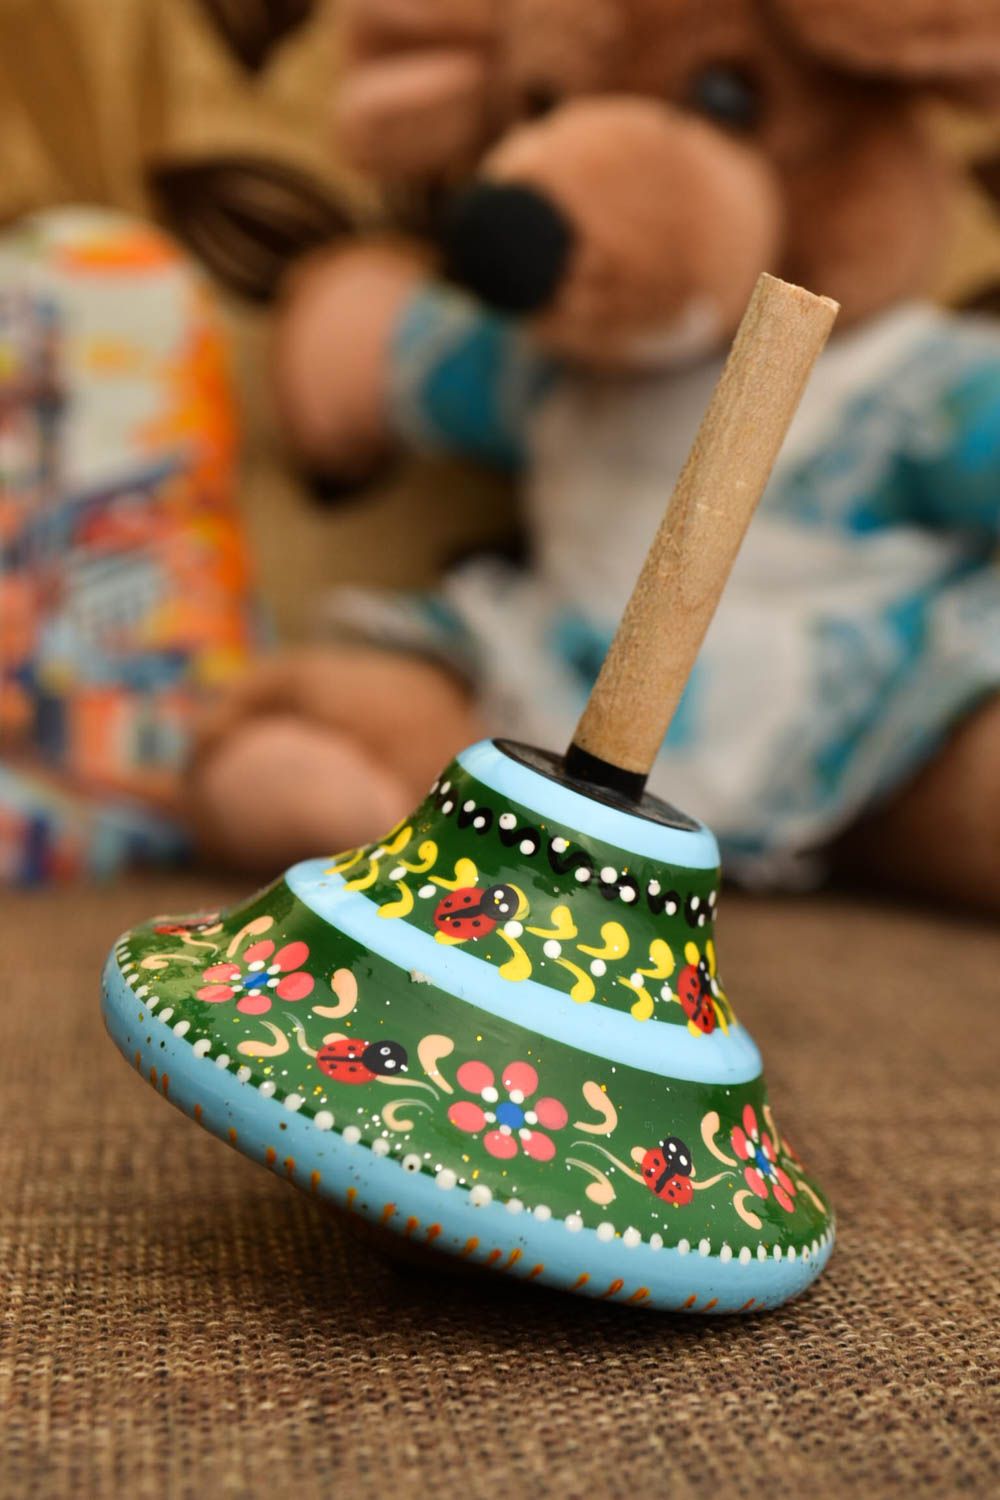 Детская юла игрушка ручной работы детская игрушка увлекательная интересная фото 1